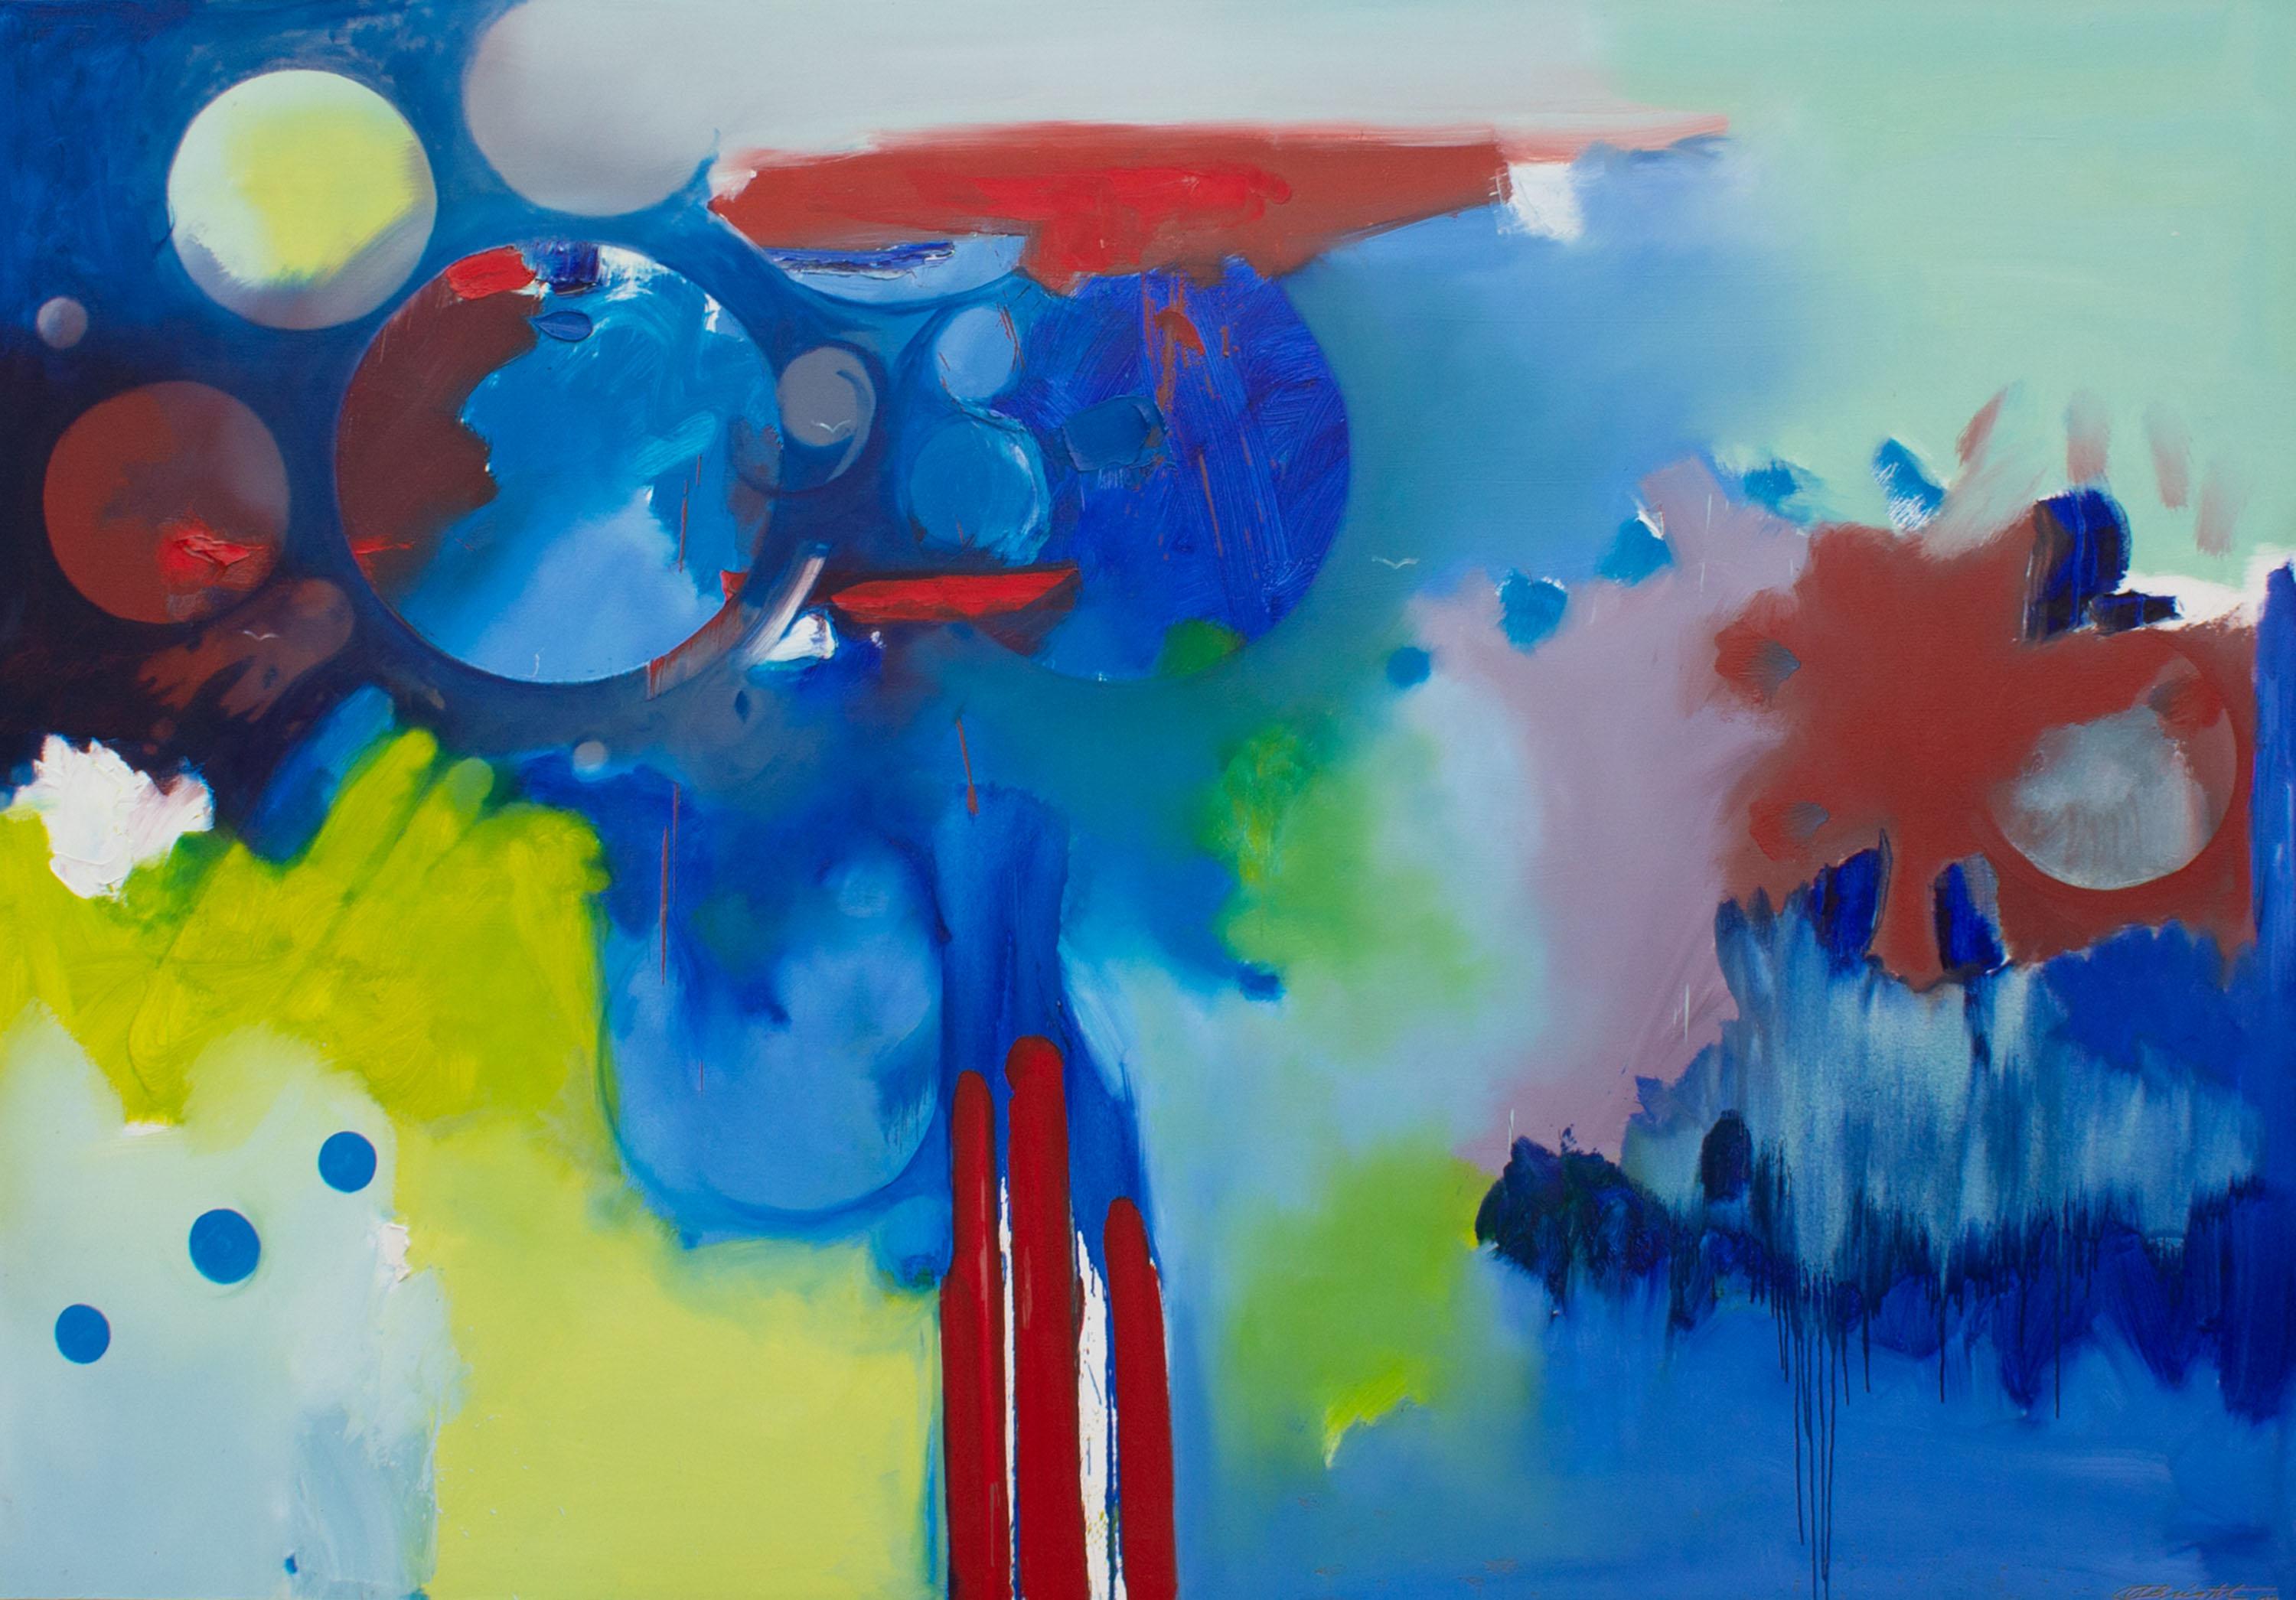 Une grande peinture à l'huile sur toile de l'artiste américain Al Bright (1940-2019). Intitulée Forcefield Blues, cette œuvre monumentale utilise des bleus vibrants ponctués de rouge et de jaune-vert vif. Des motifs en cercle flottent parmi les